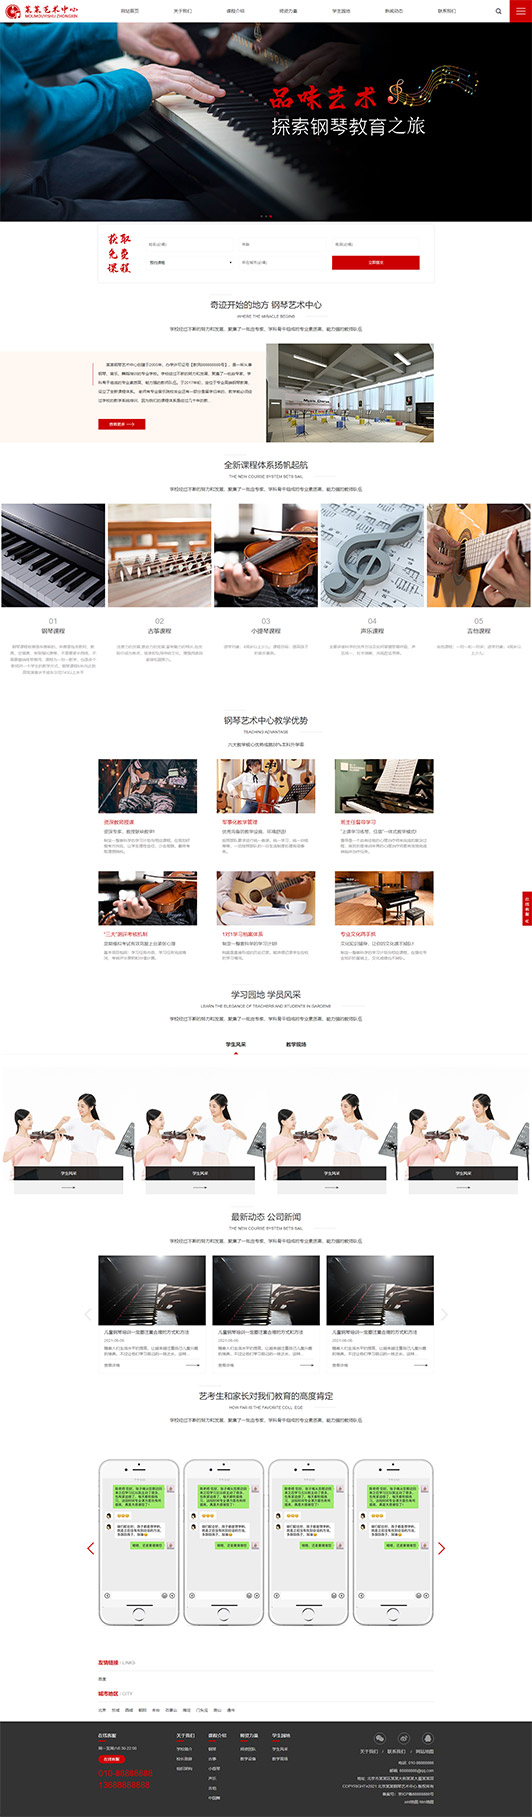 长春钢琴艺术培训公司响应式企业网站